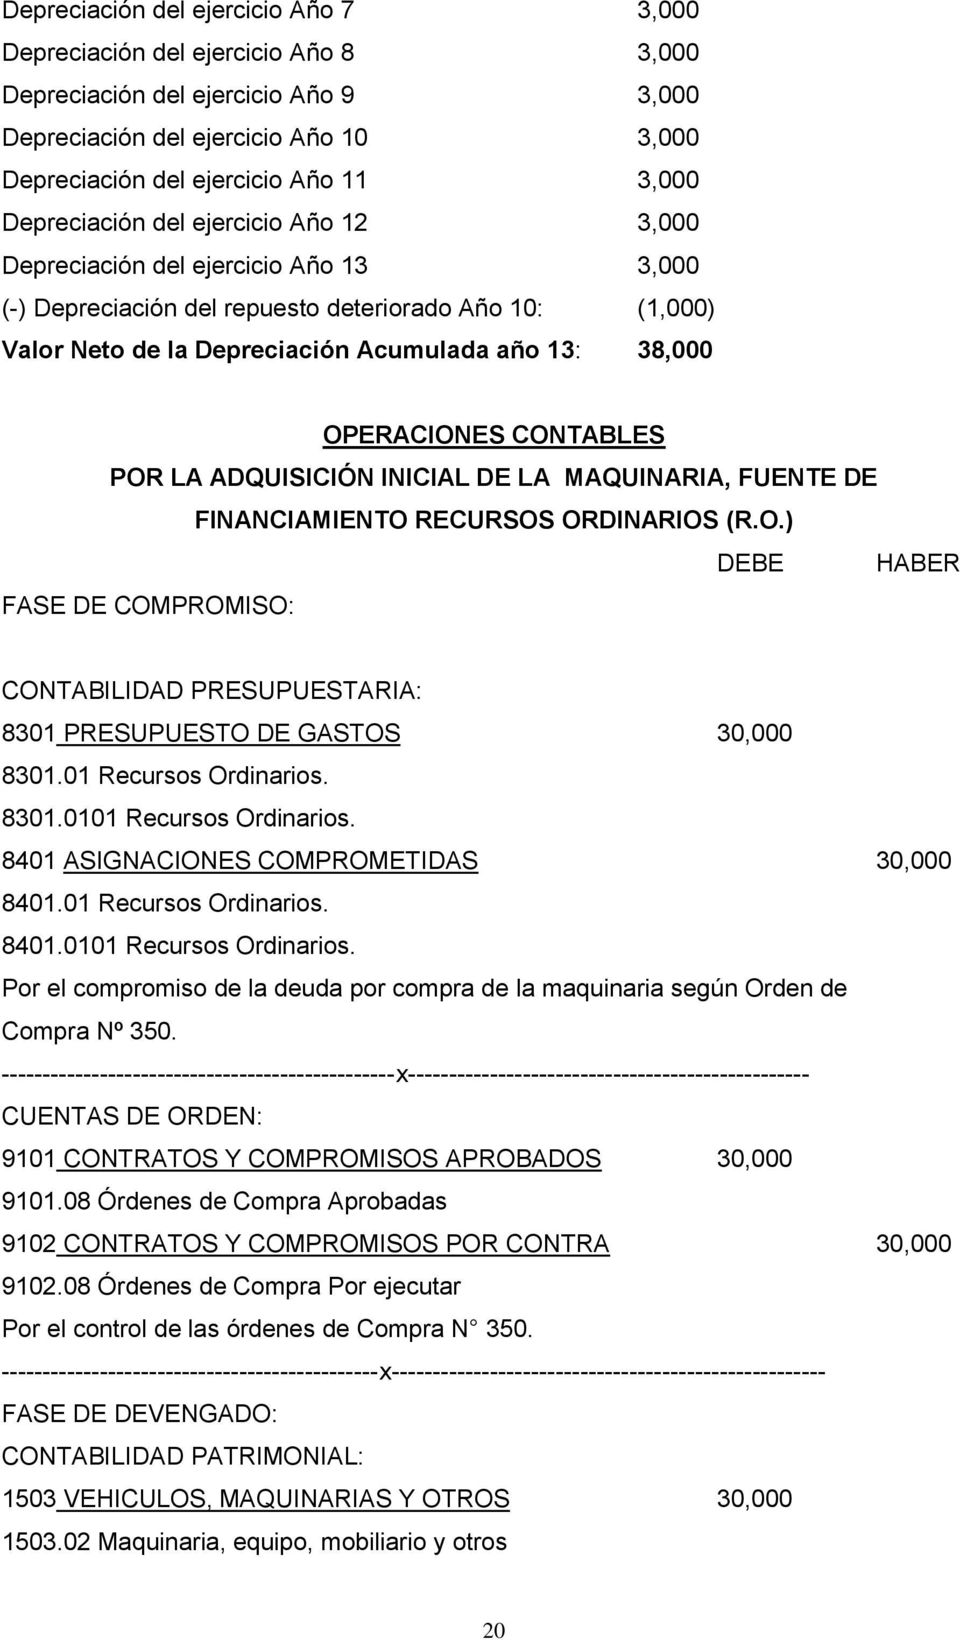 OPERACIONES CONTABLES POR LA ADQUISICIÓN INICIAL DE LA MAQUINARIA, FUENTE DE FINANCIAMIENTO RECURSOS ORDINARIOS (R.O.) DEBE HABER FASE DE COMPROMISO: CONTABILIDAD PRESUPUESTARIA: 8301 PRESUPUESTO DE GASTOS 30,000 8301.